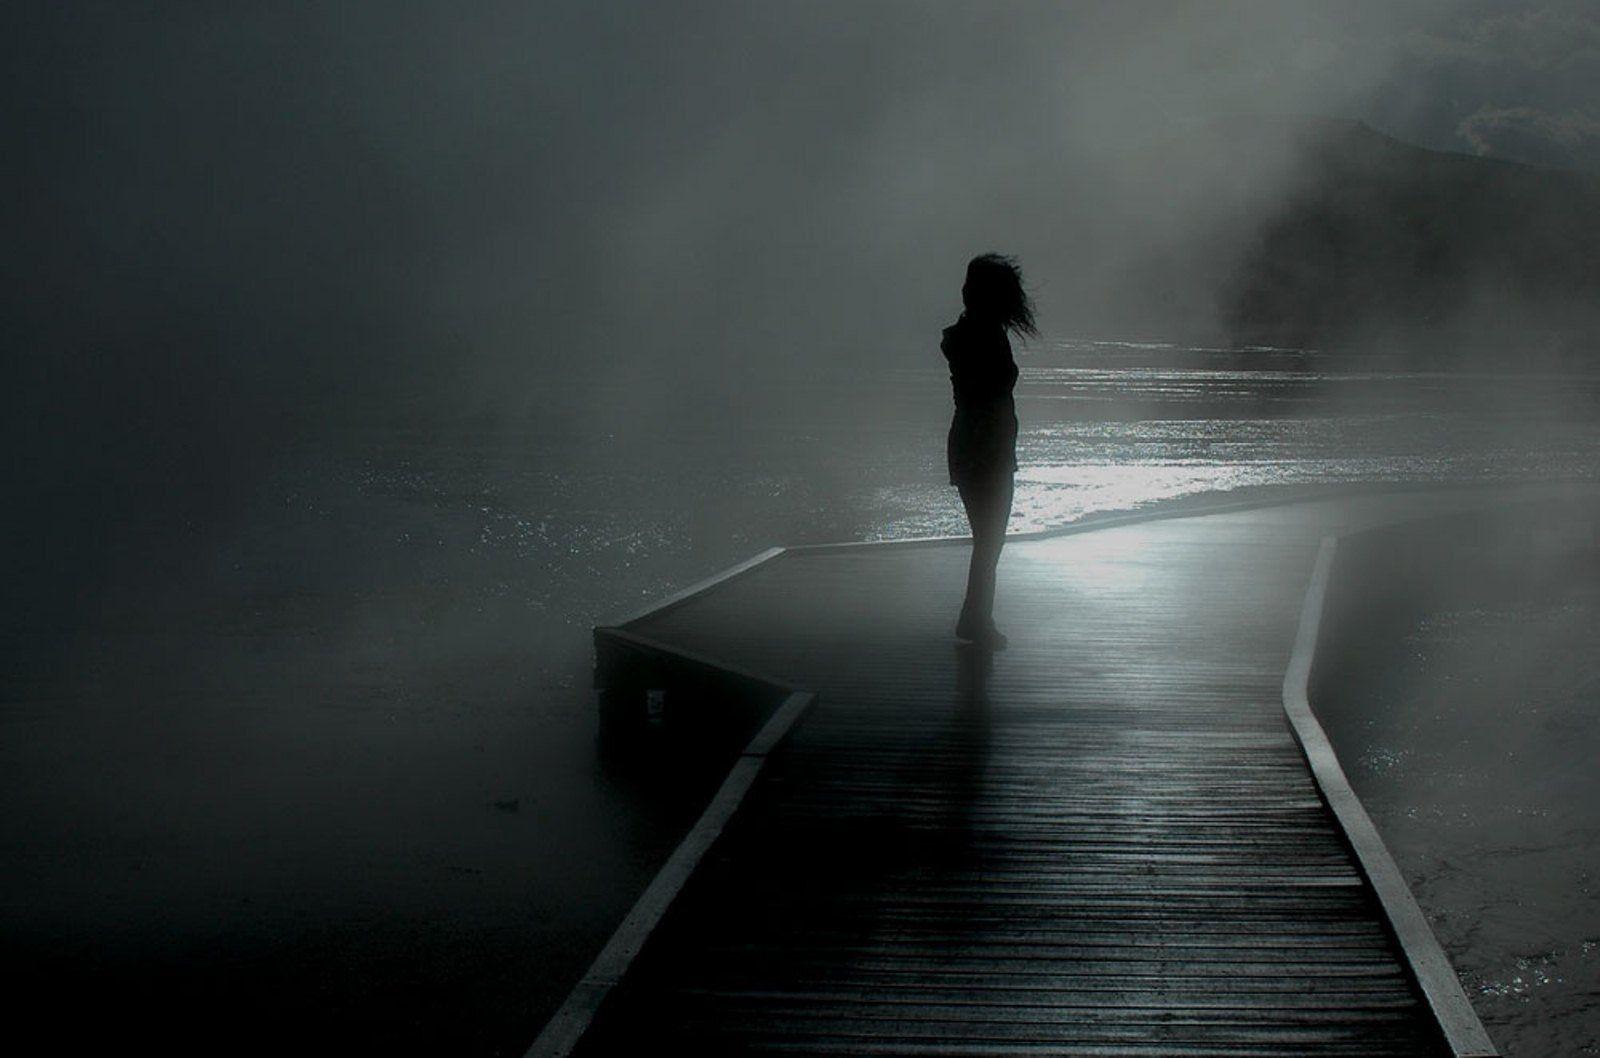 تصویر غمگین و ناراحت دختر تنها در شب تاریک برای پروفایل 